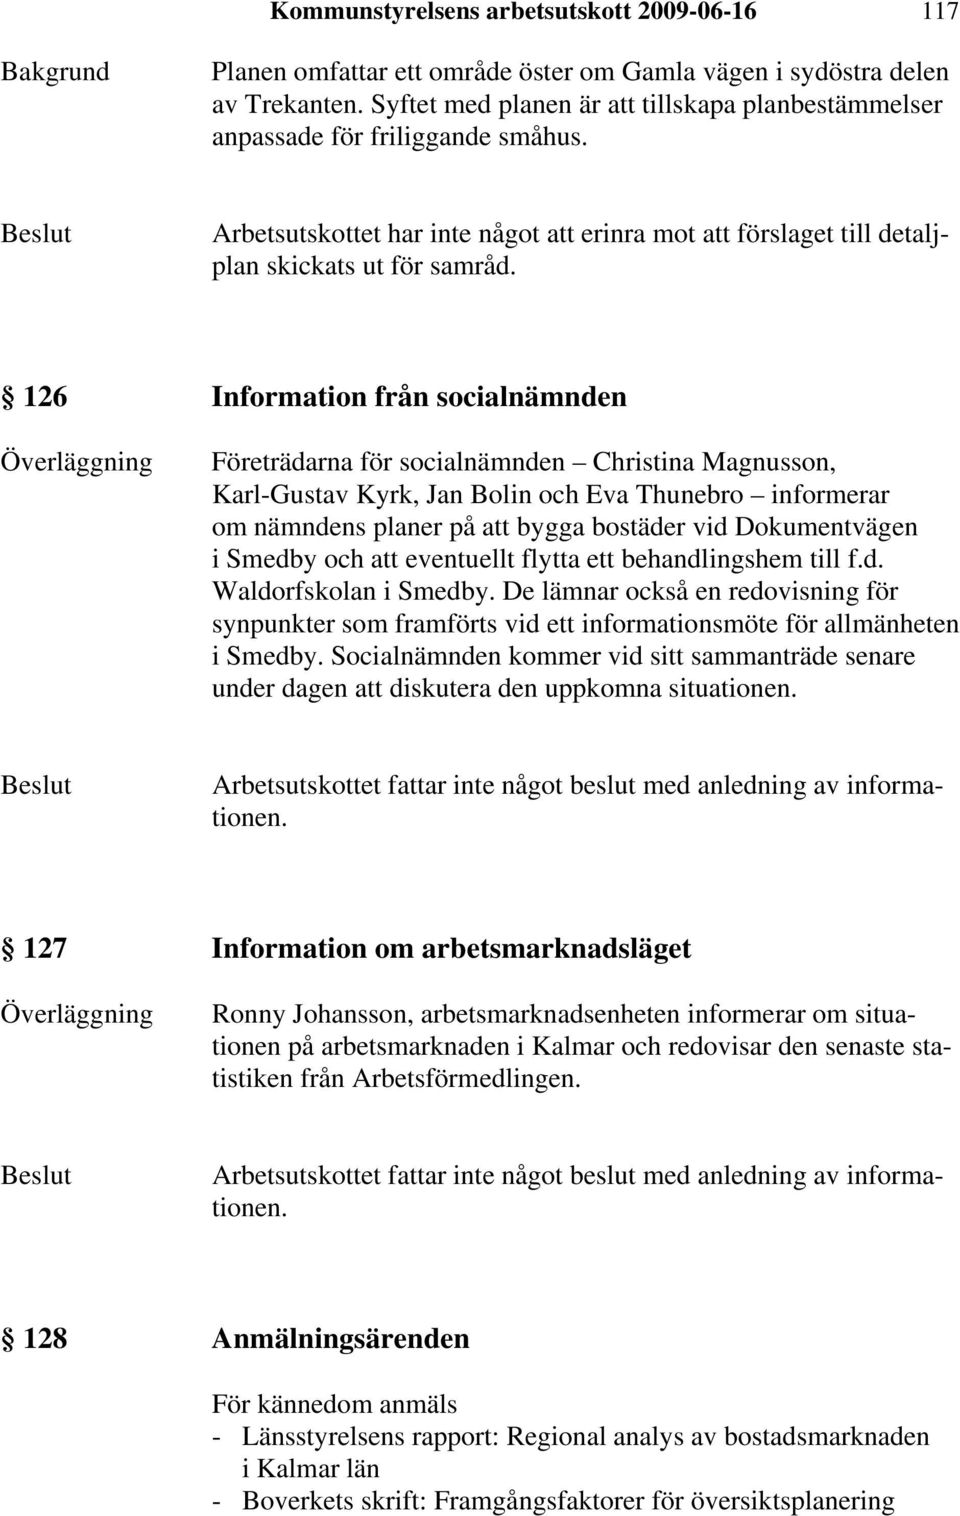 126 Information från socialnämnden Företrädarna för socialnämnden Christina Magnusson, Karl-Gustav Kyrk, Jan Bolin och Eva Thunebro informerar om nämndens planer på att bygga bostäder vid